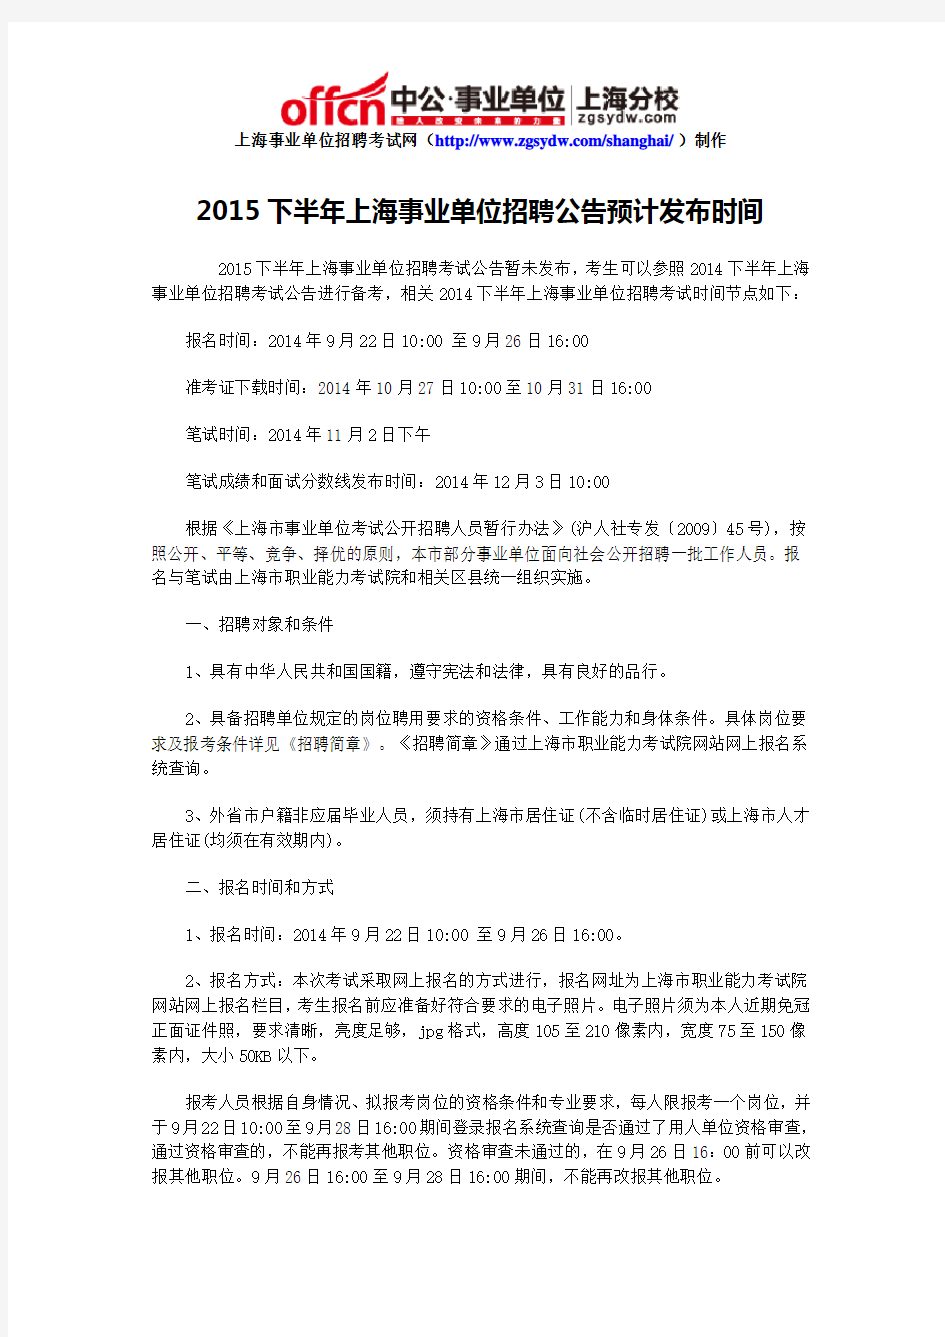 2015下半年上海事业单位招聘公告预计发布时间